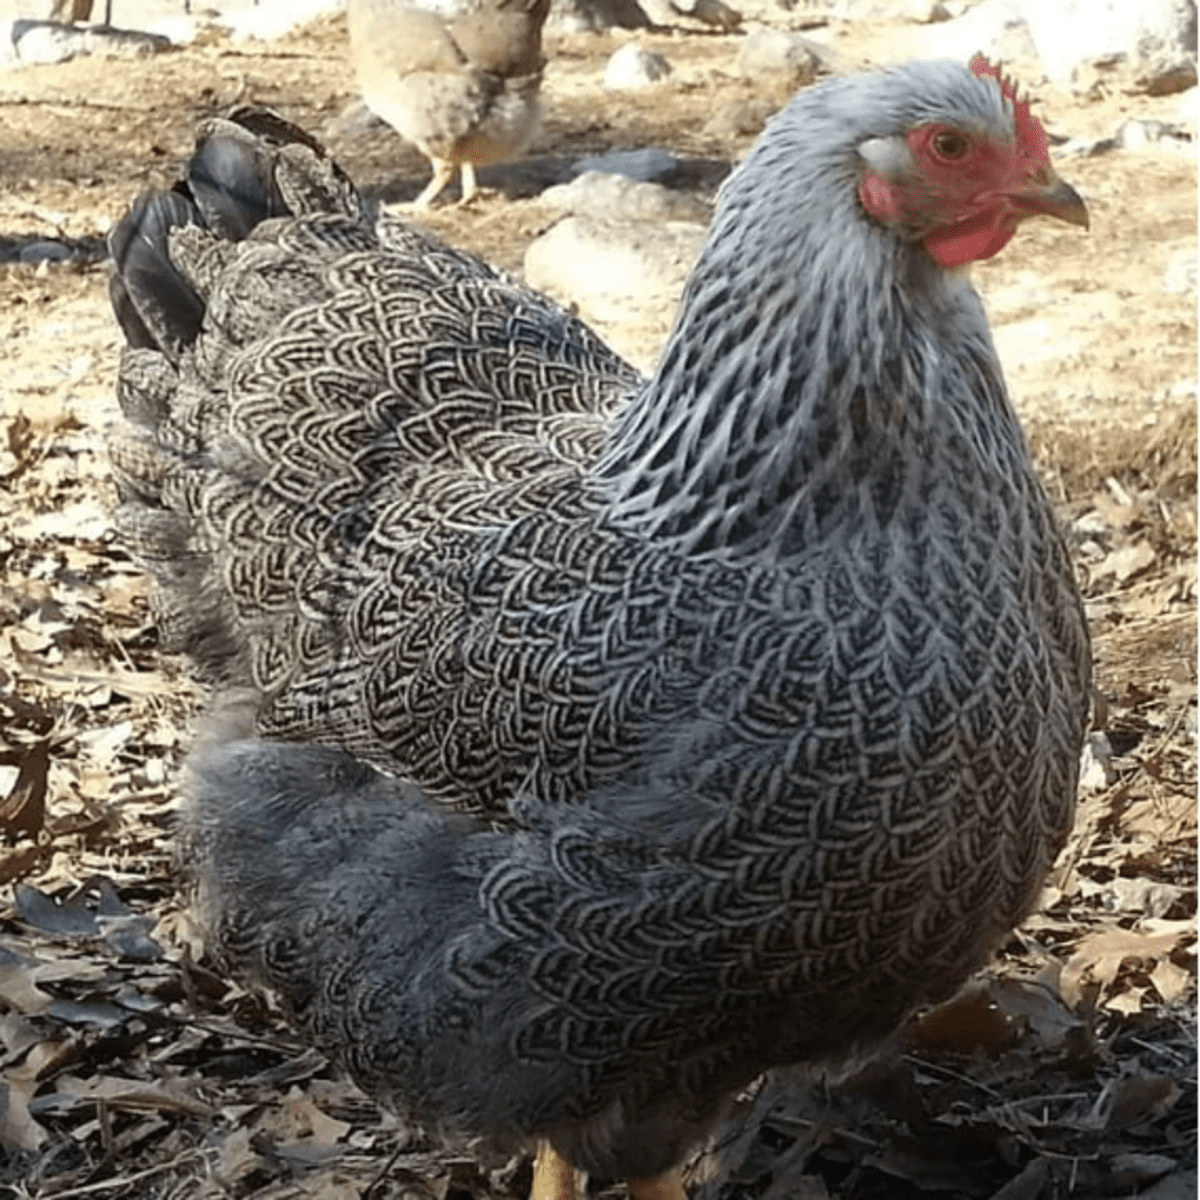 Rampicanti di polli dalle zampe corte, le loro caratteristiche